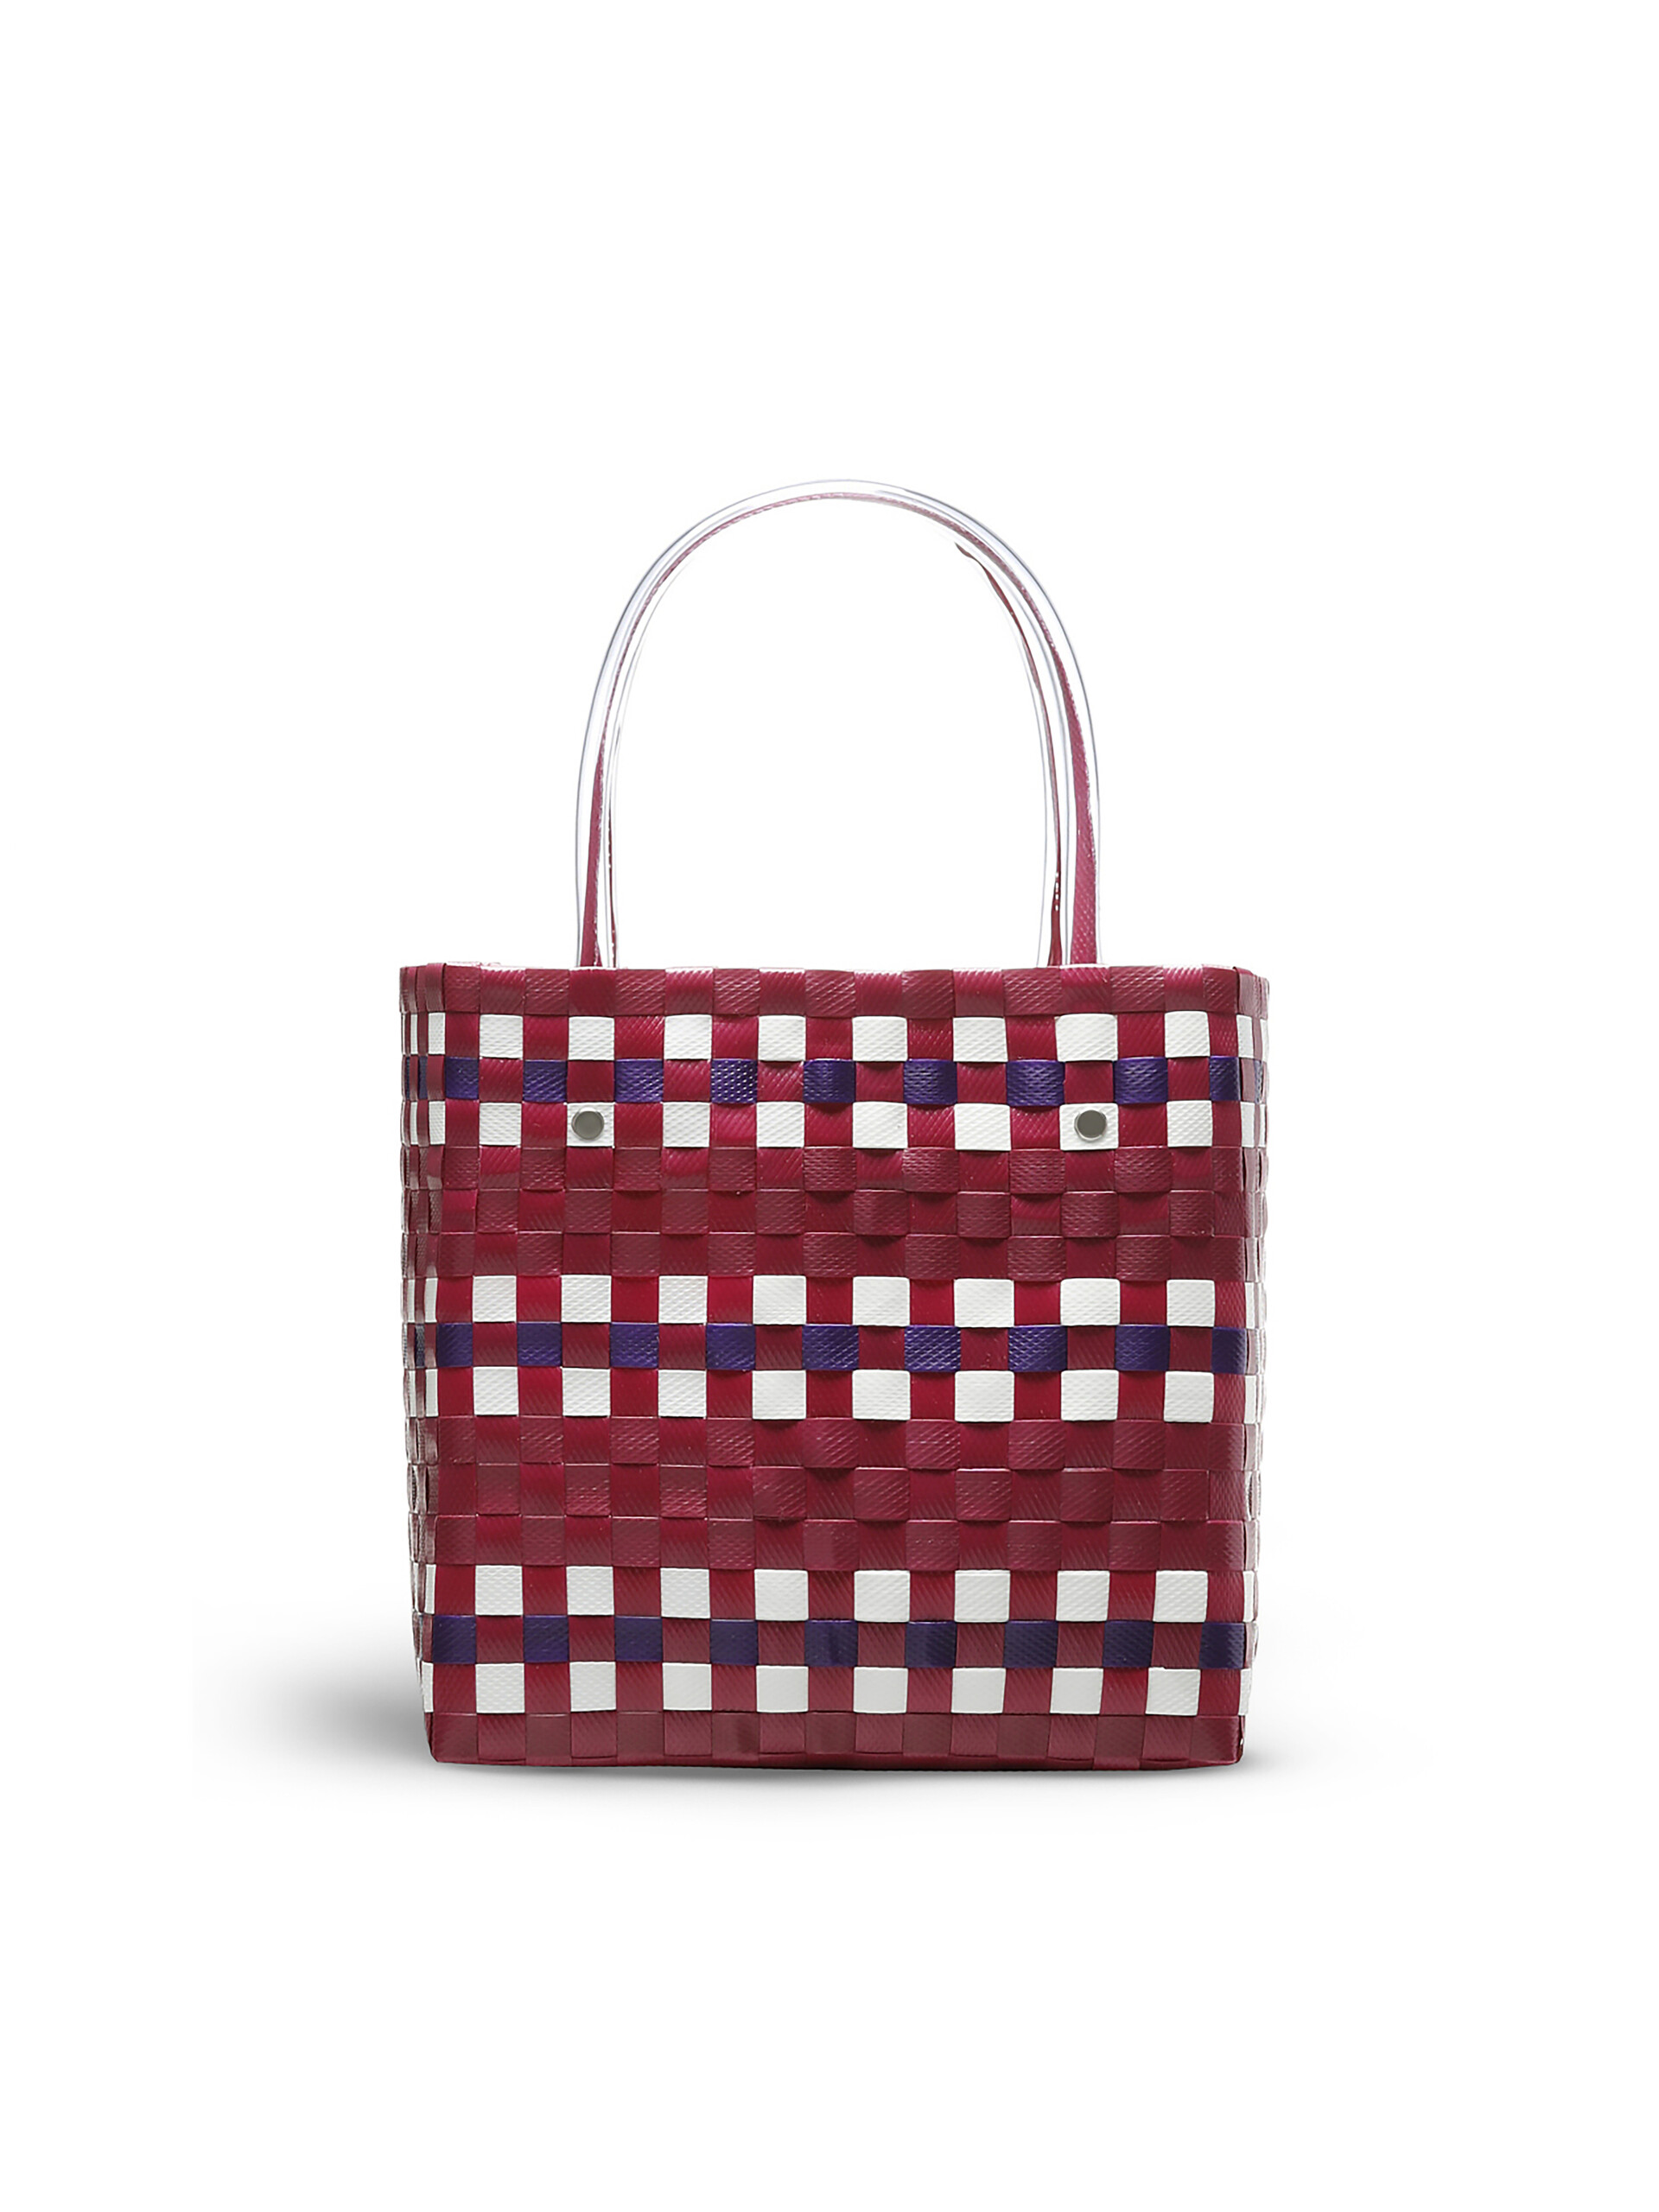 MARNI MARKET shopping bag in pink polypropylene - Bags - Image 3